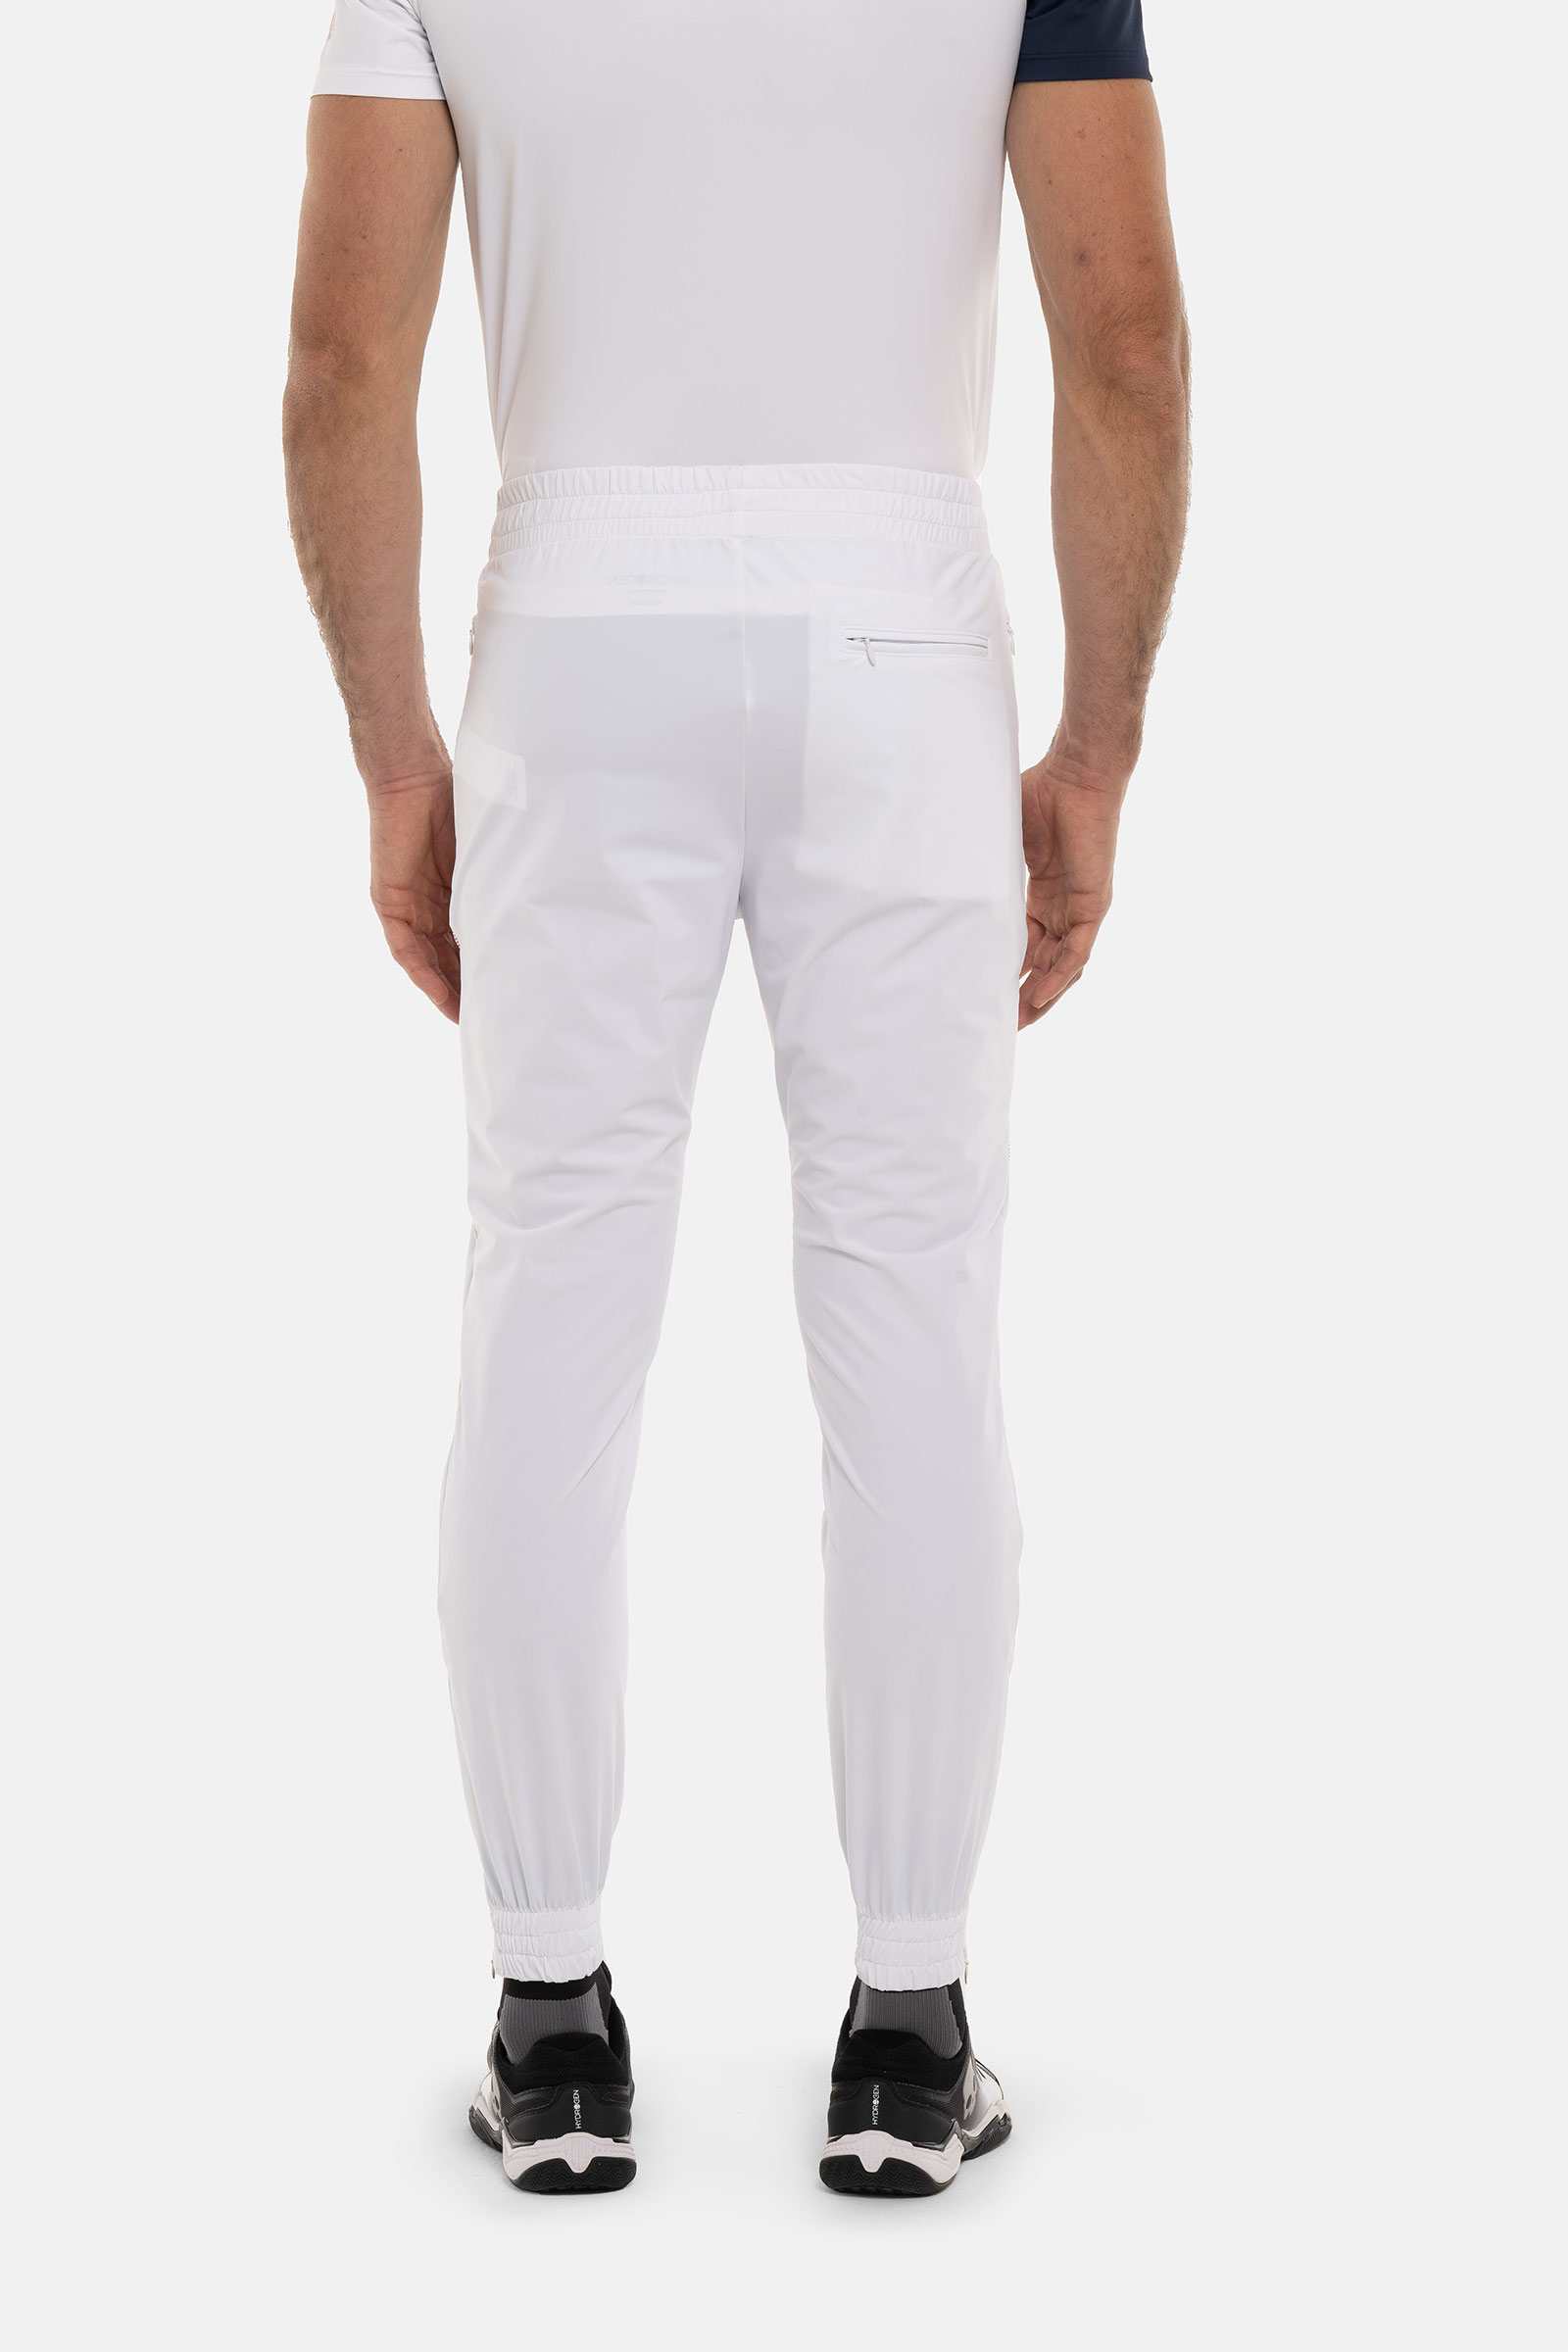 PANTALONI TECNICI SPORT STRIPES - WHITE - Abbigliamento sportivo | Hydrogen